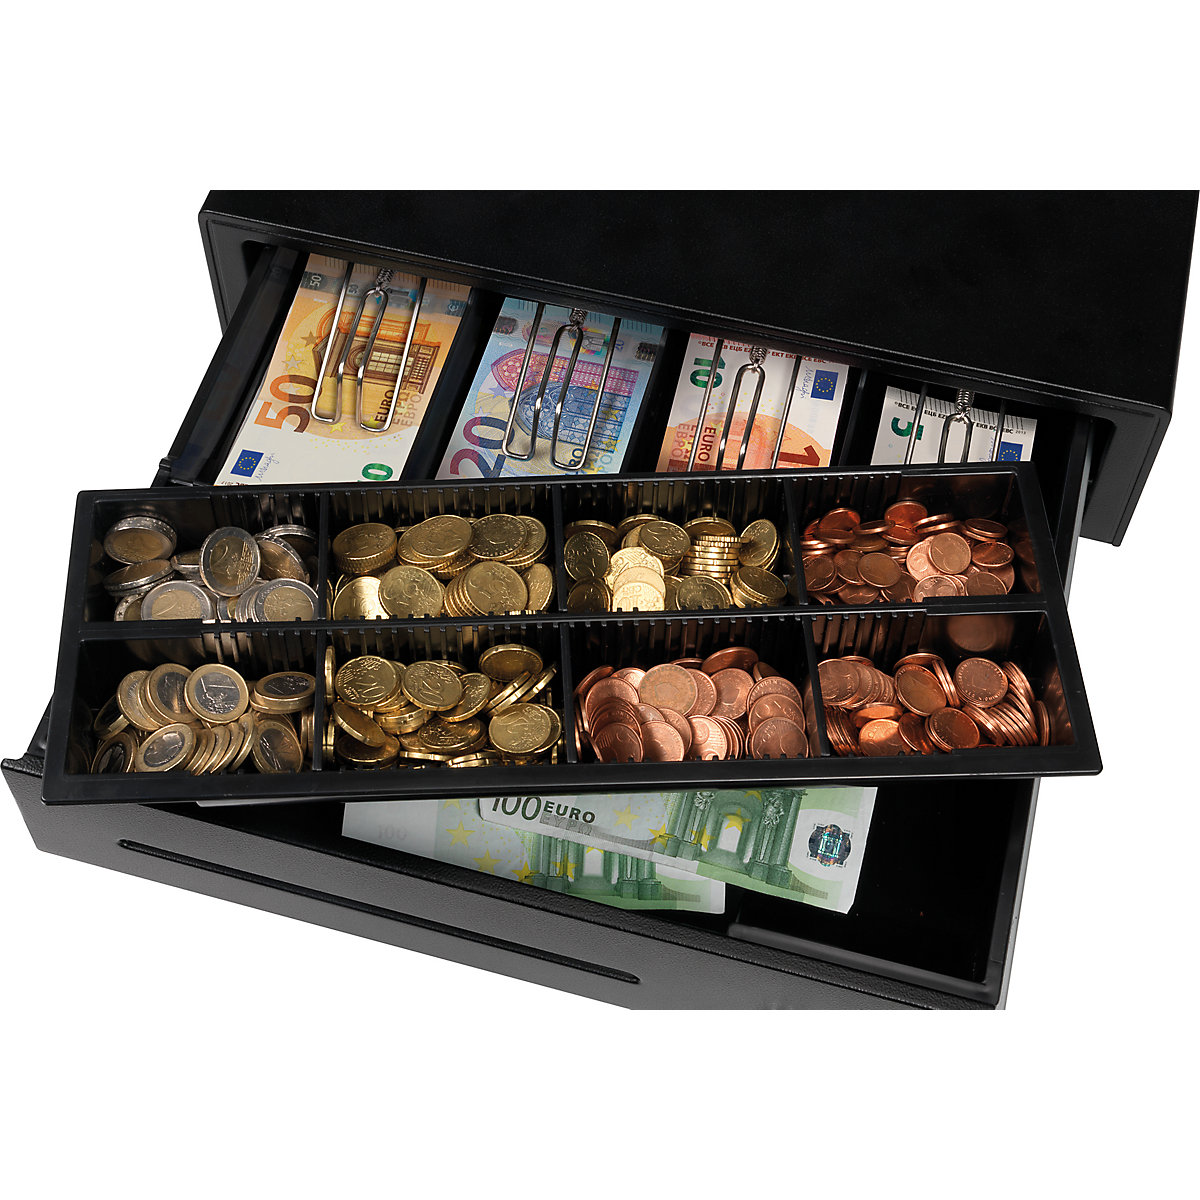 Cash drawer – Safescan